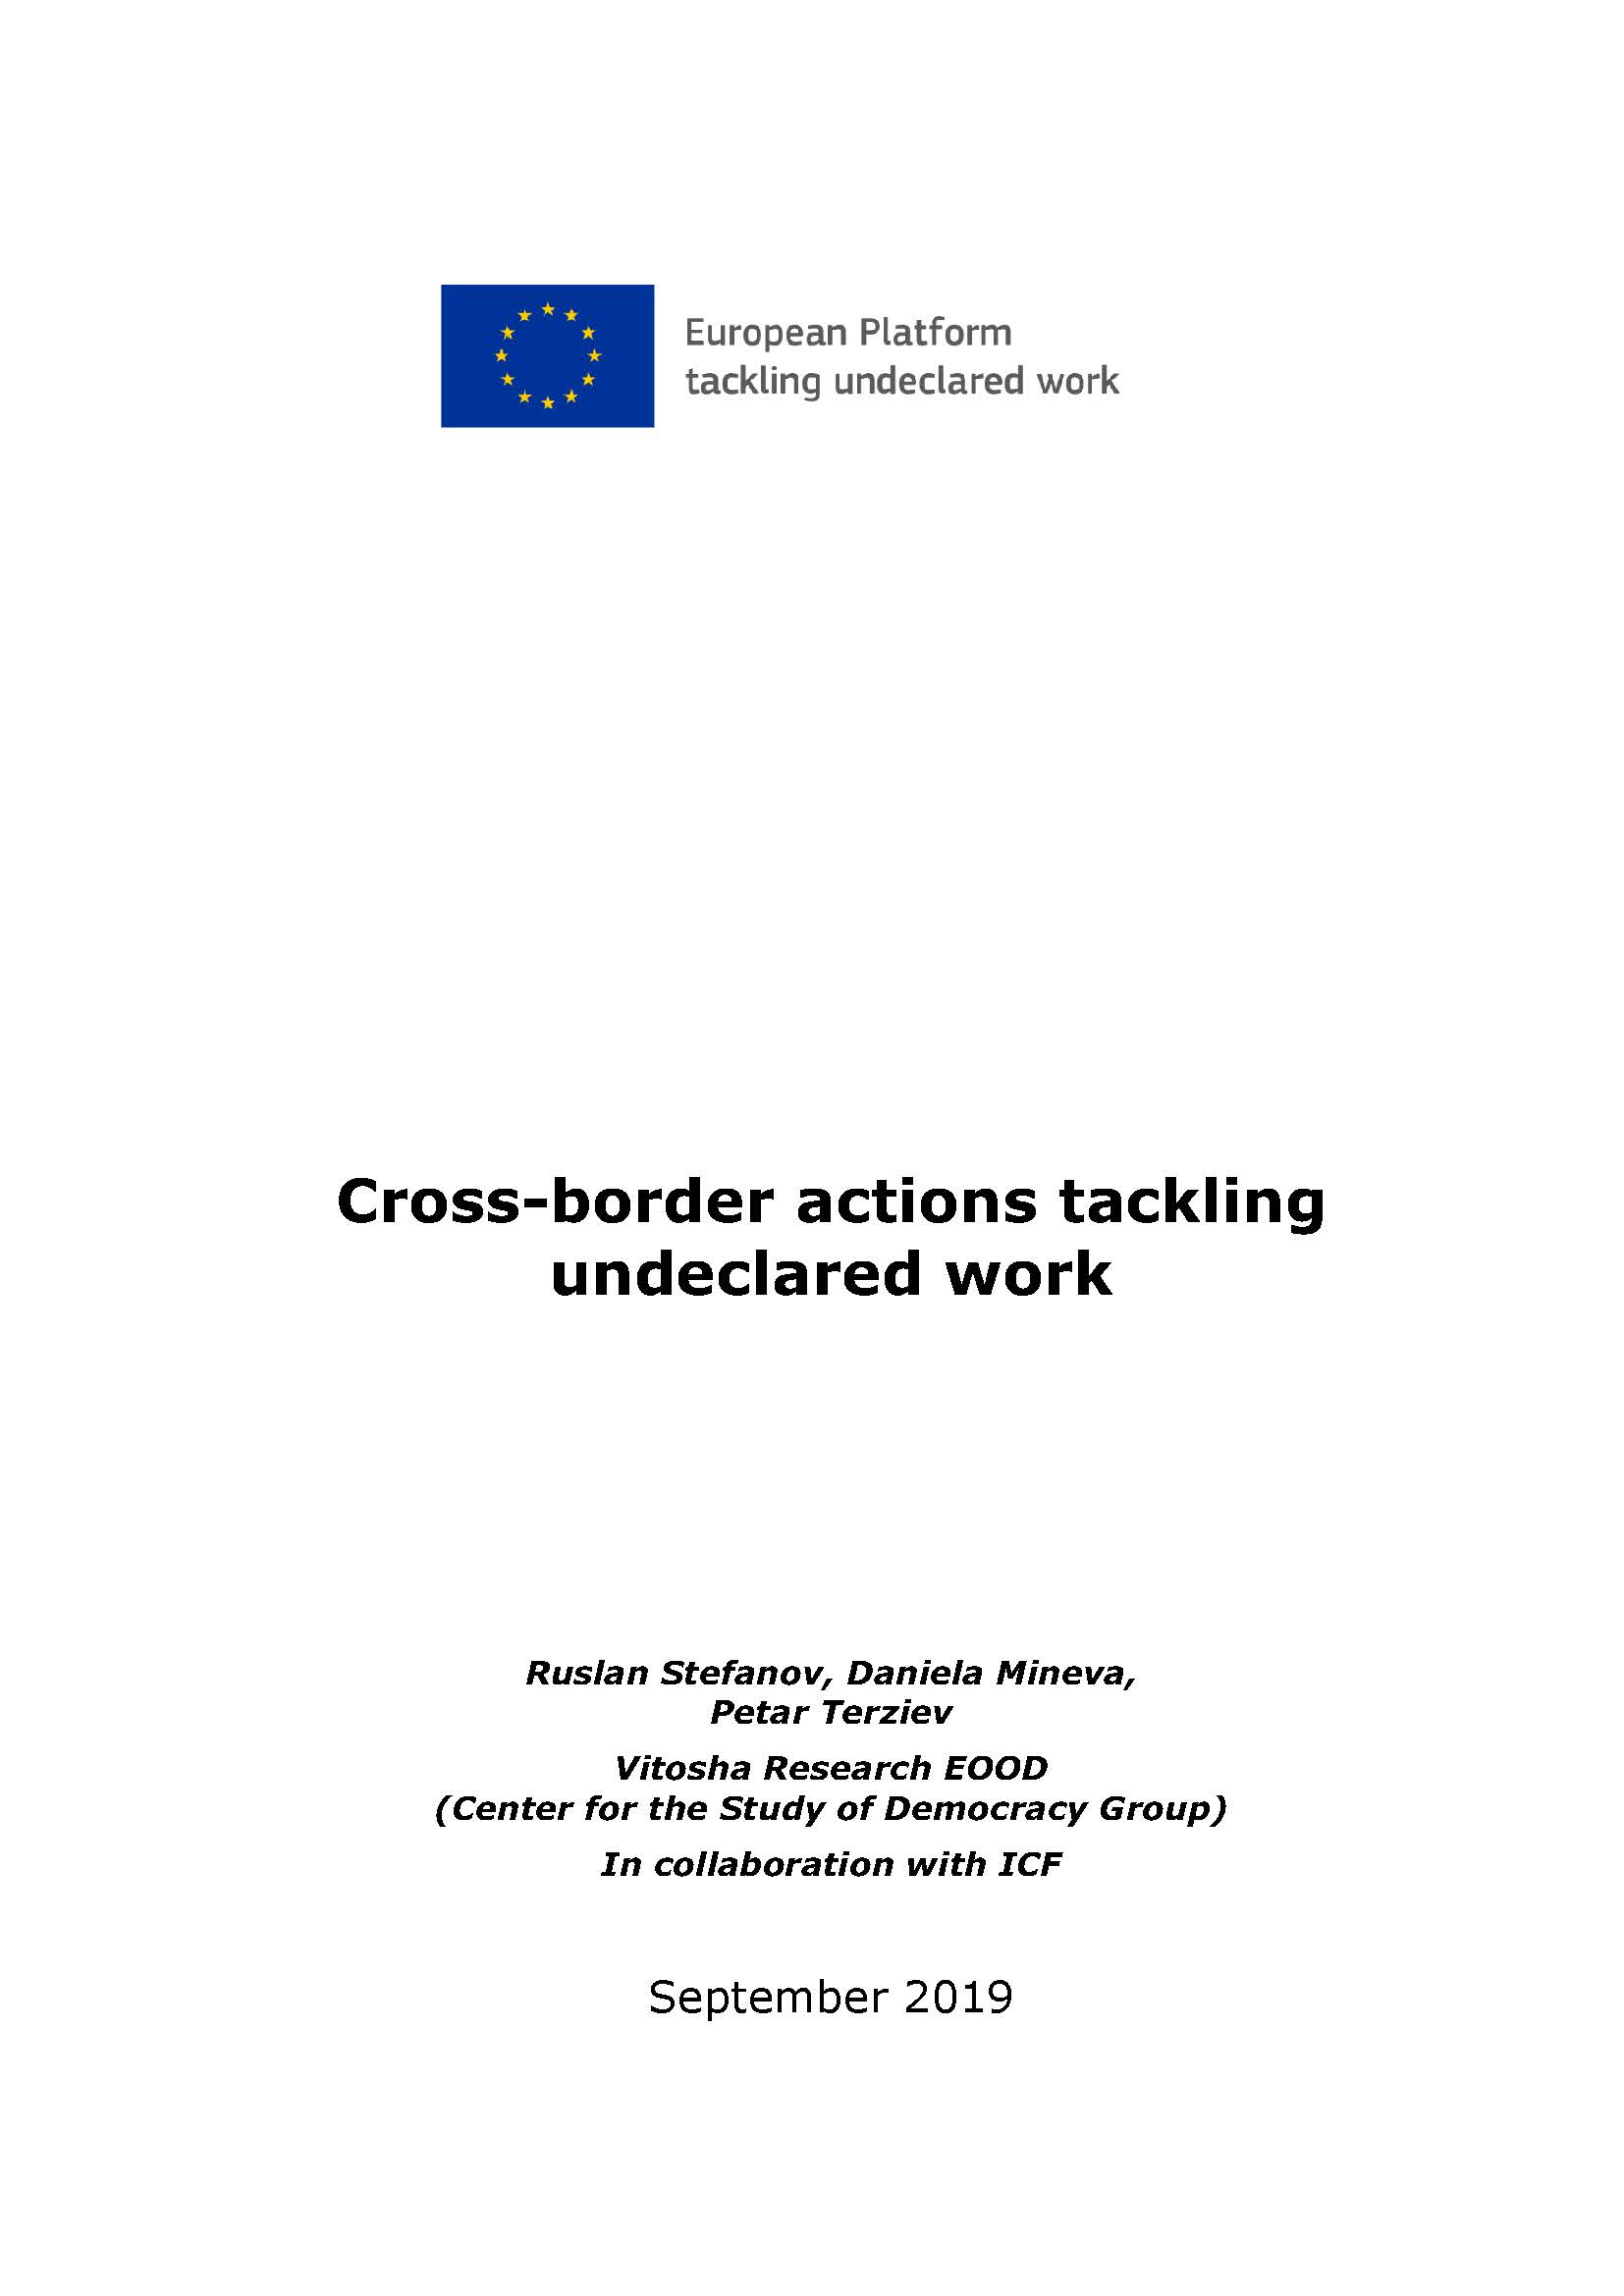 Cross-border actionstackling undeclared work